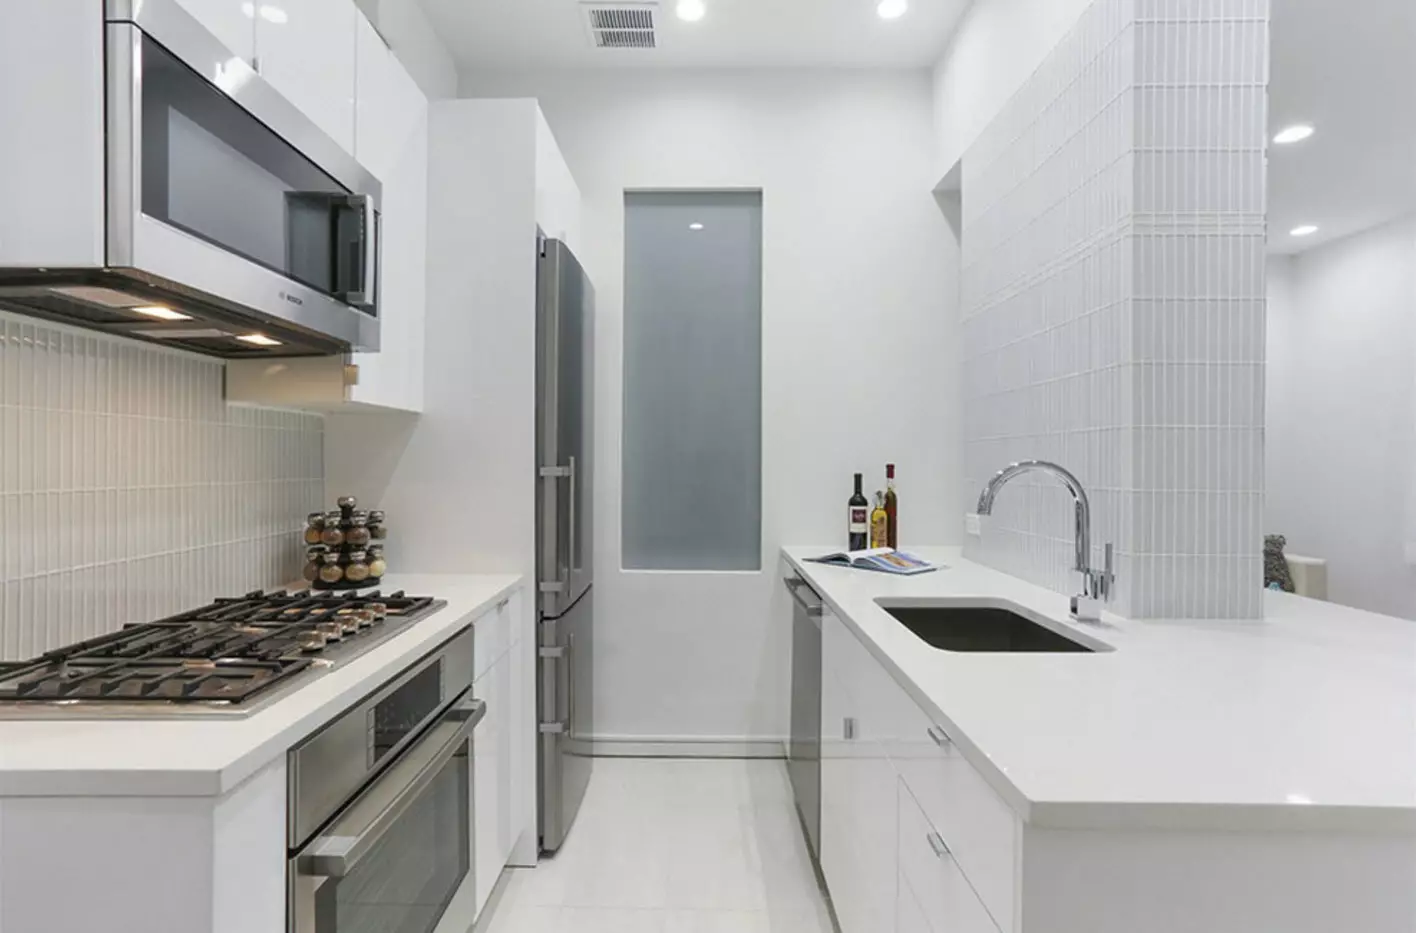 Desain dapur kecil dengan lemari es (76 foto): Di mana harus meletakkan kulkas? Pojok dan headset dapur built-in dengan kulkas di interior. Bagaimana cara menempatkannya di kamar dengan jendela? 9504_24